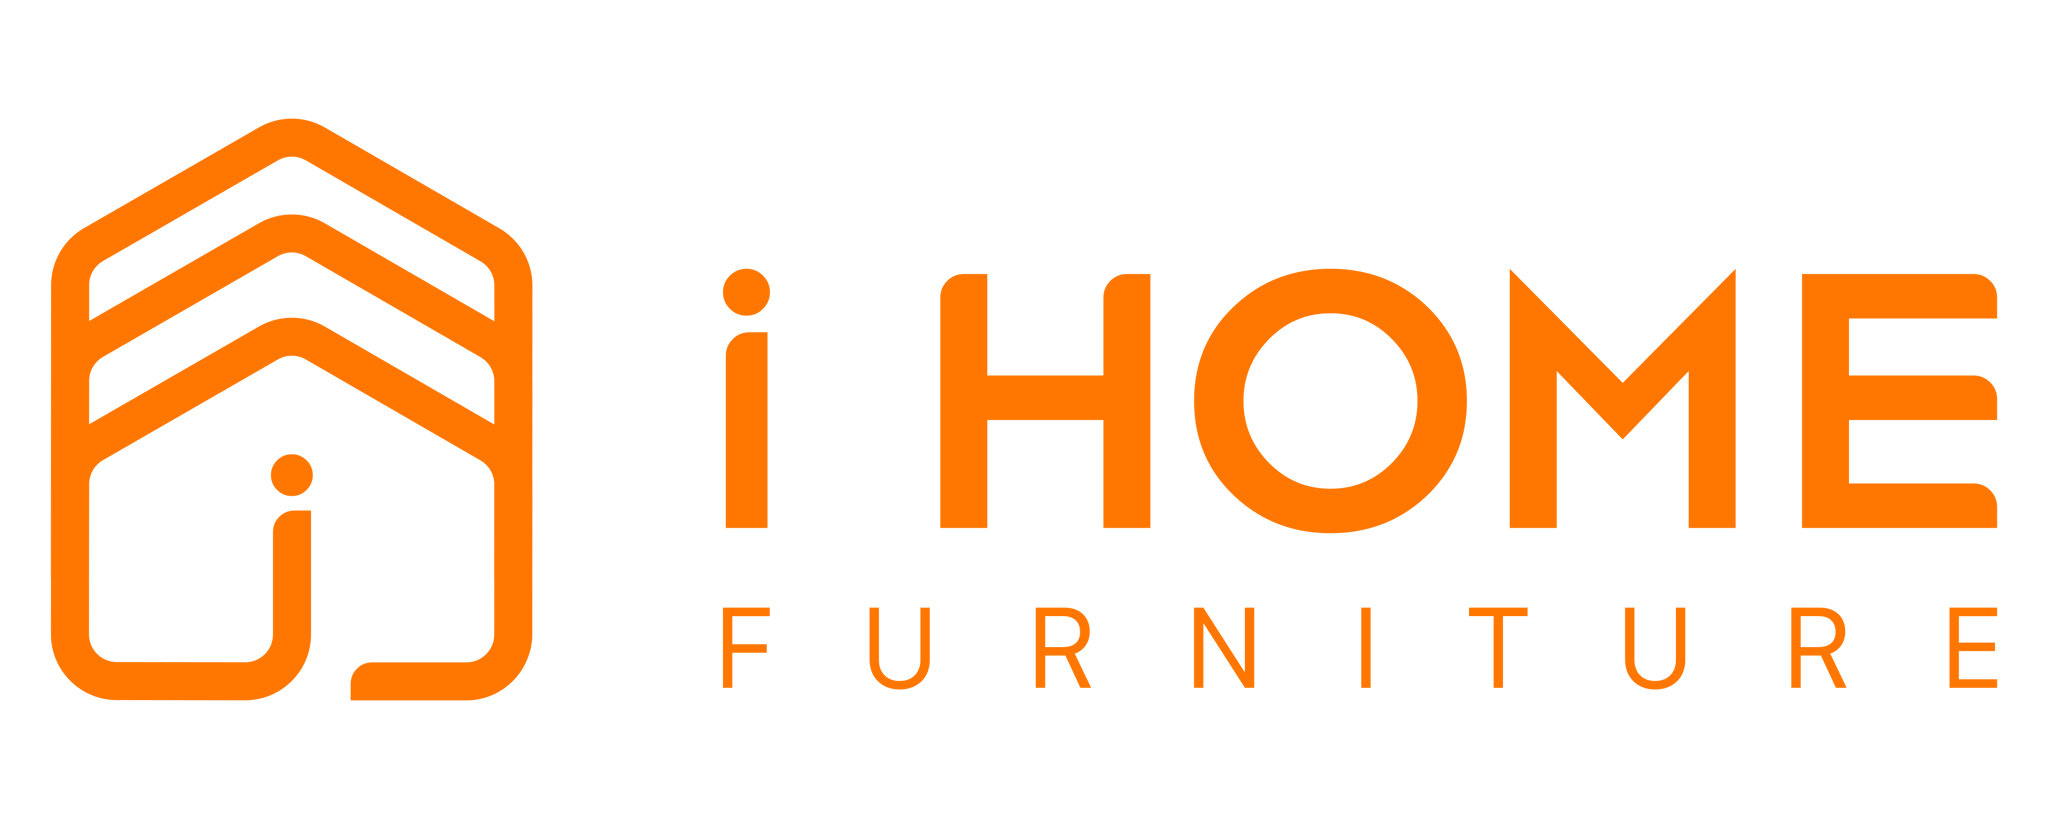 iHome Furniture - Nội thất giá kho